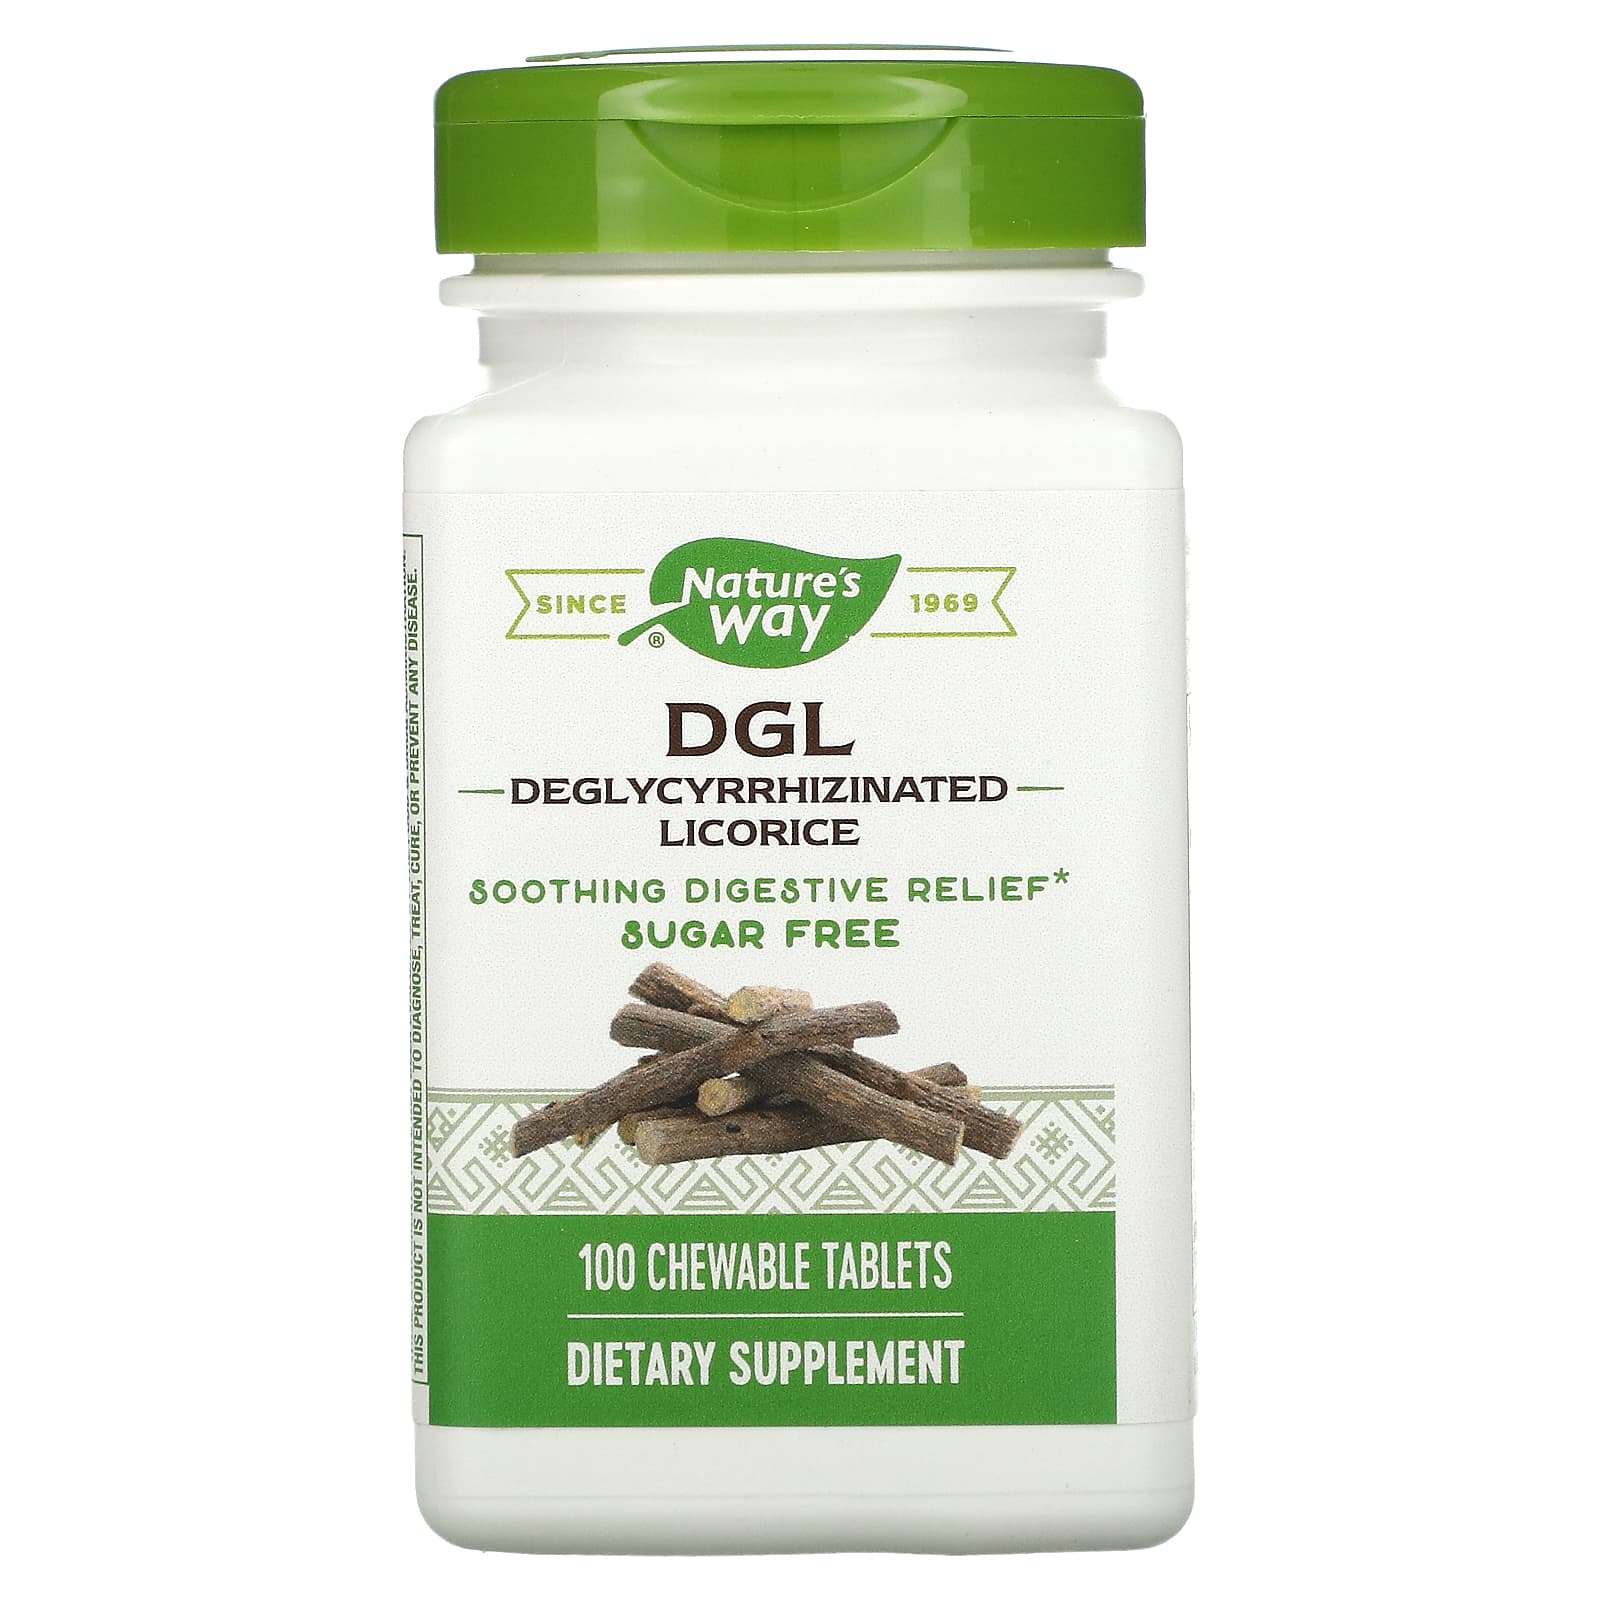 Nature's Way DGL 3:1 глицирризинат солодки 100 жевательных таблеток natural factors dgl глицирризинат экстракта из корня солодки 90 жевательных таблеток